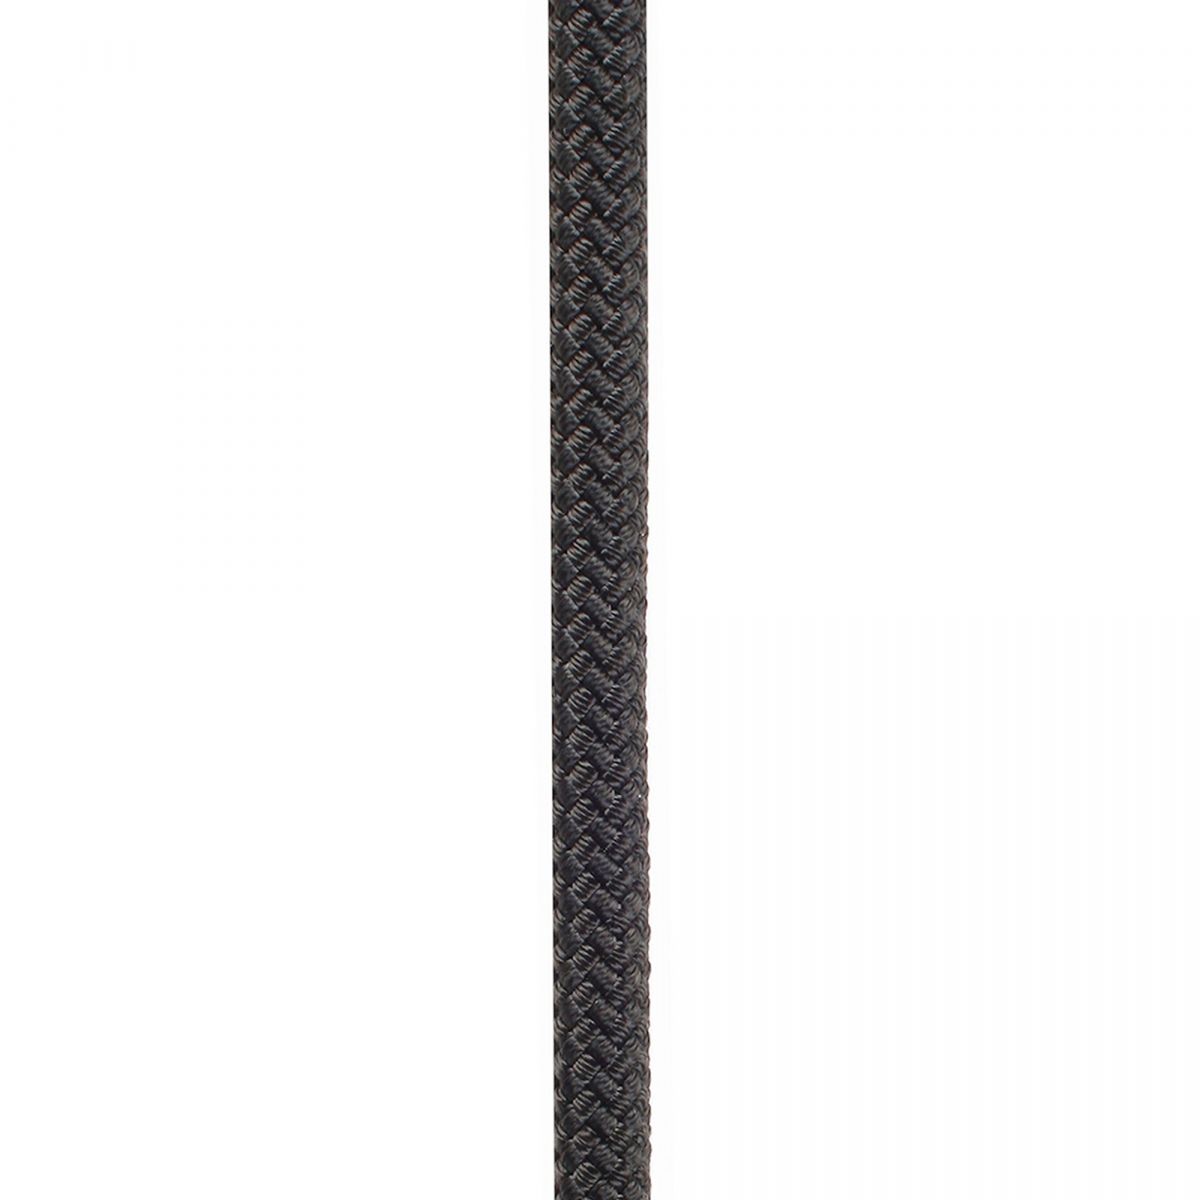 Edelweiss Proline 11mm 50m Negra